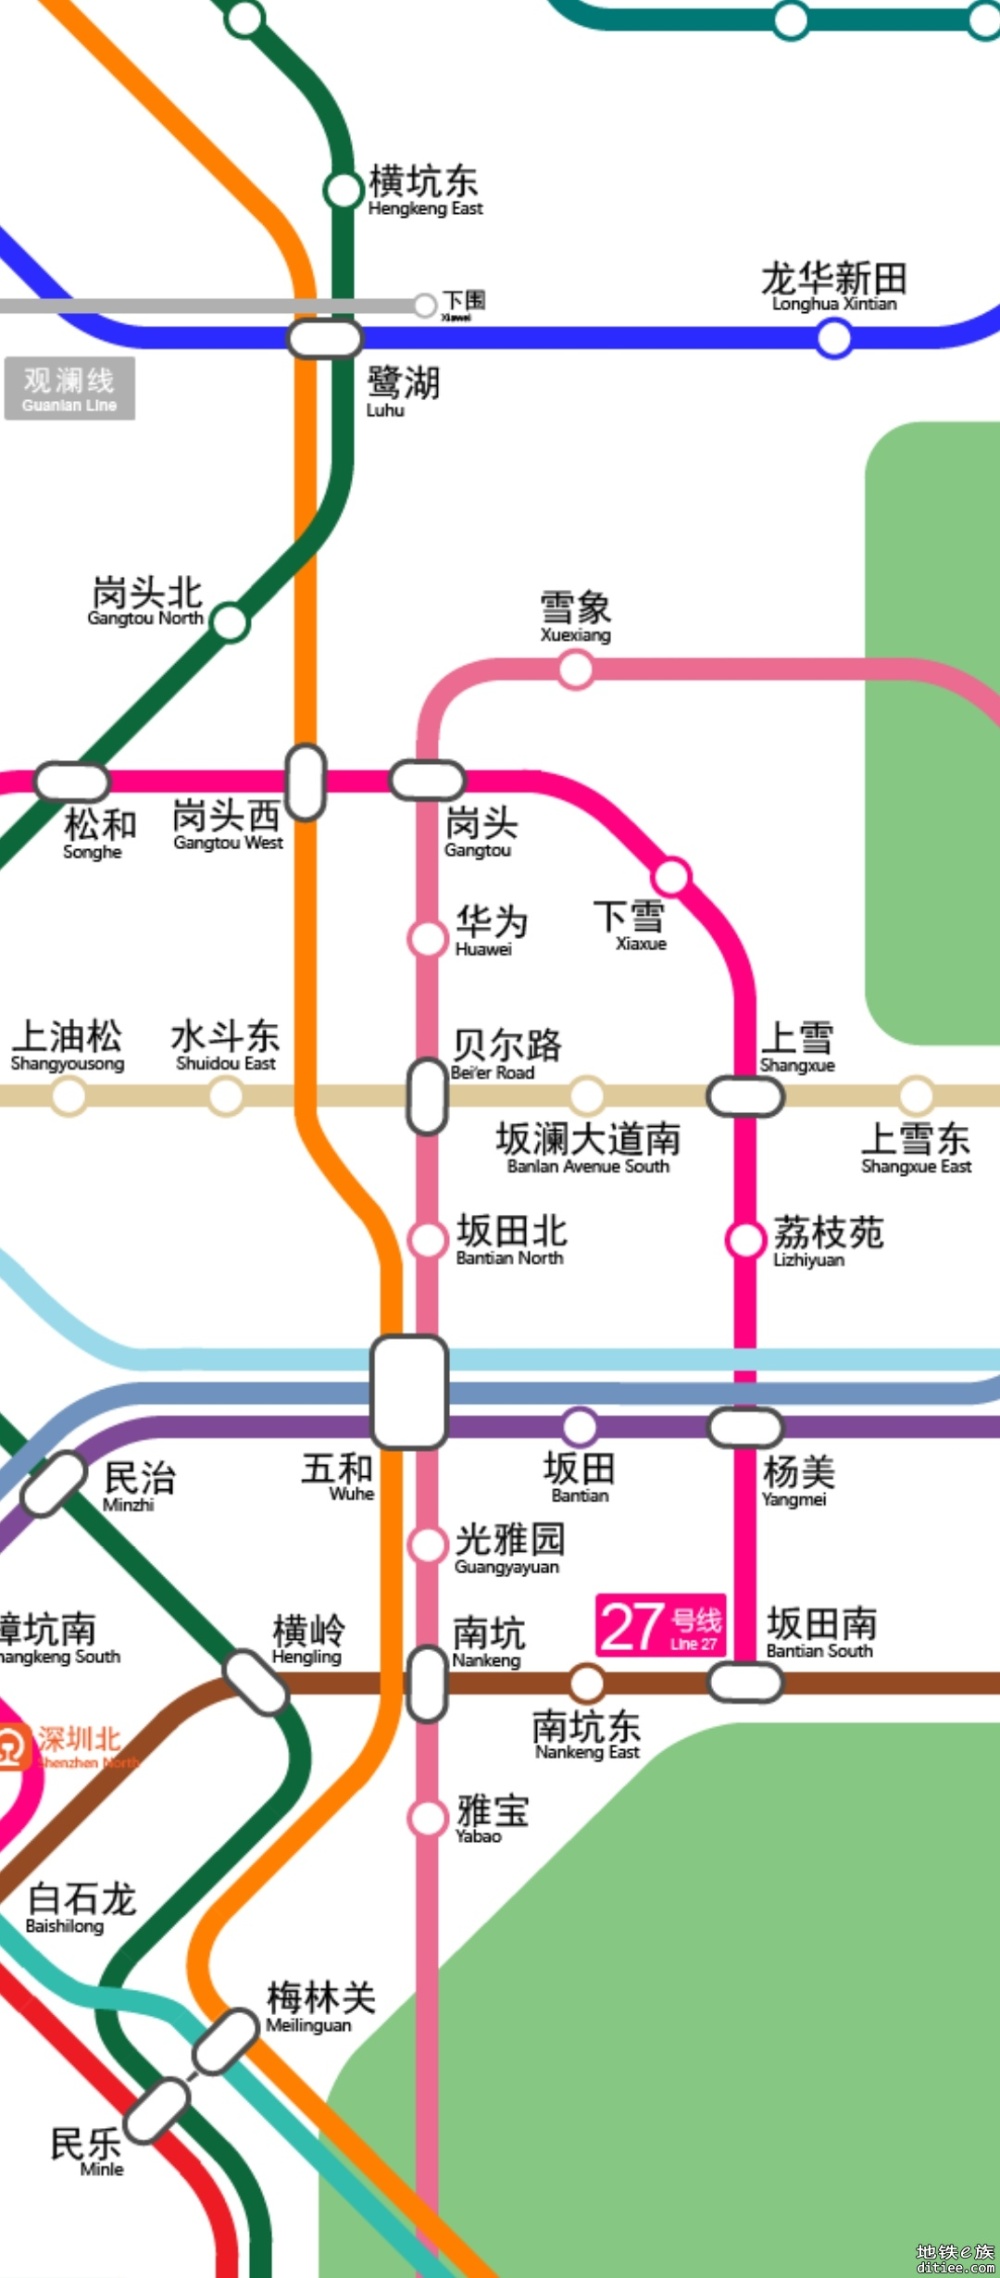 深圳市城市轨道交通27号线一期工程 社会稳定性风险分析公众参与信息网络补充公示